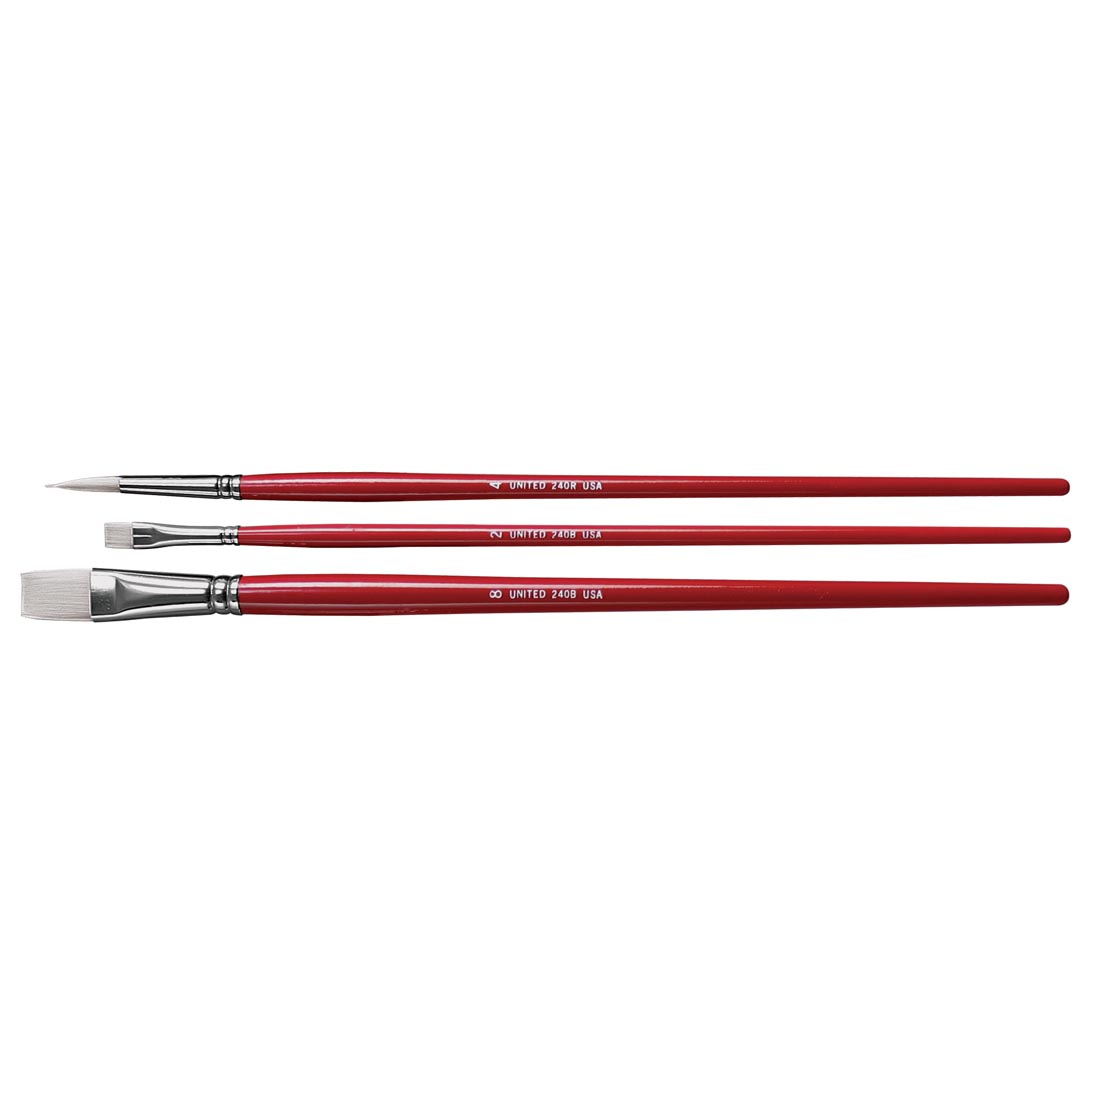 United White Taklon Long Handle 3-Count Brush Set